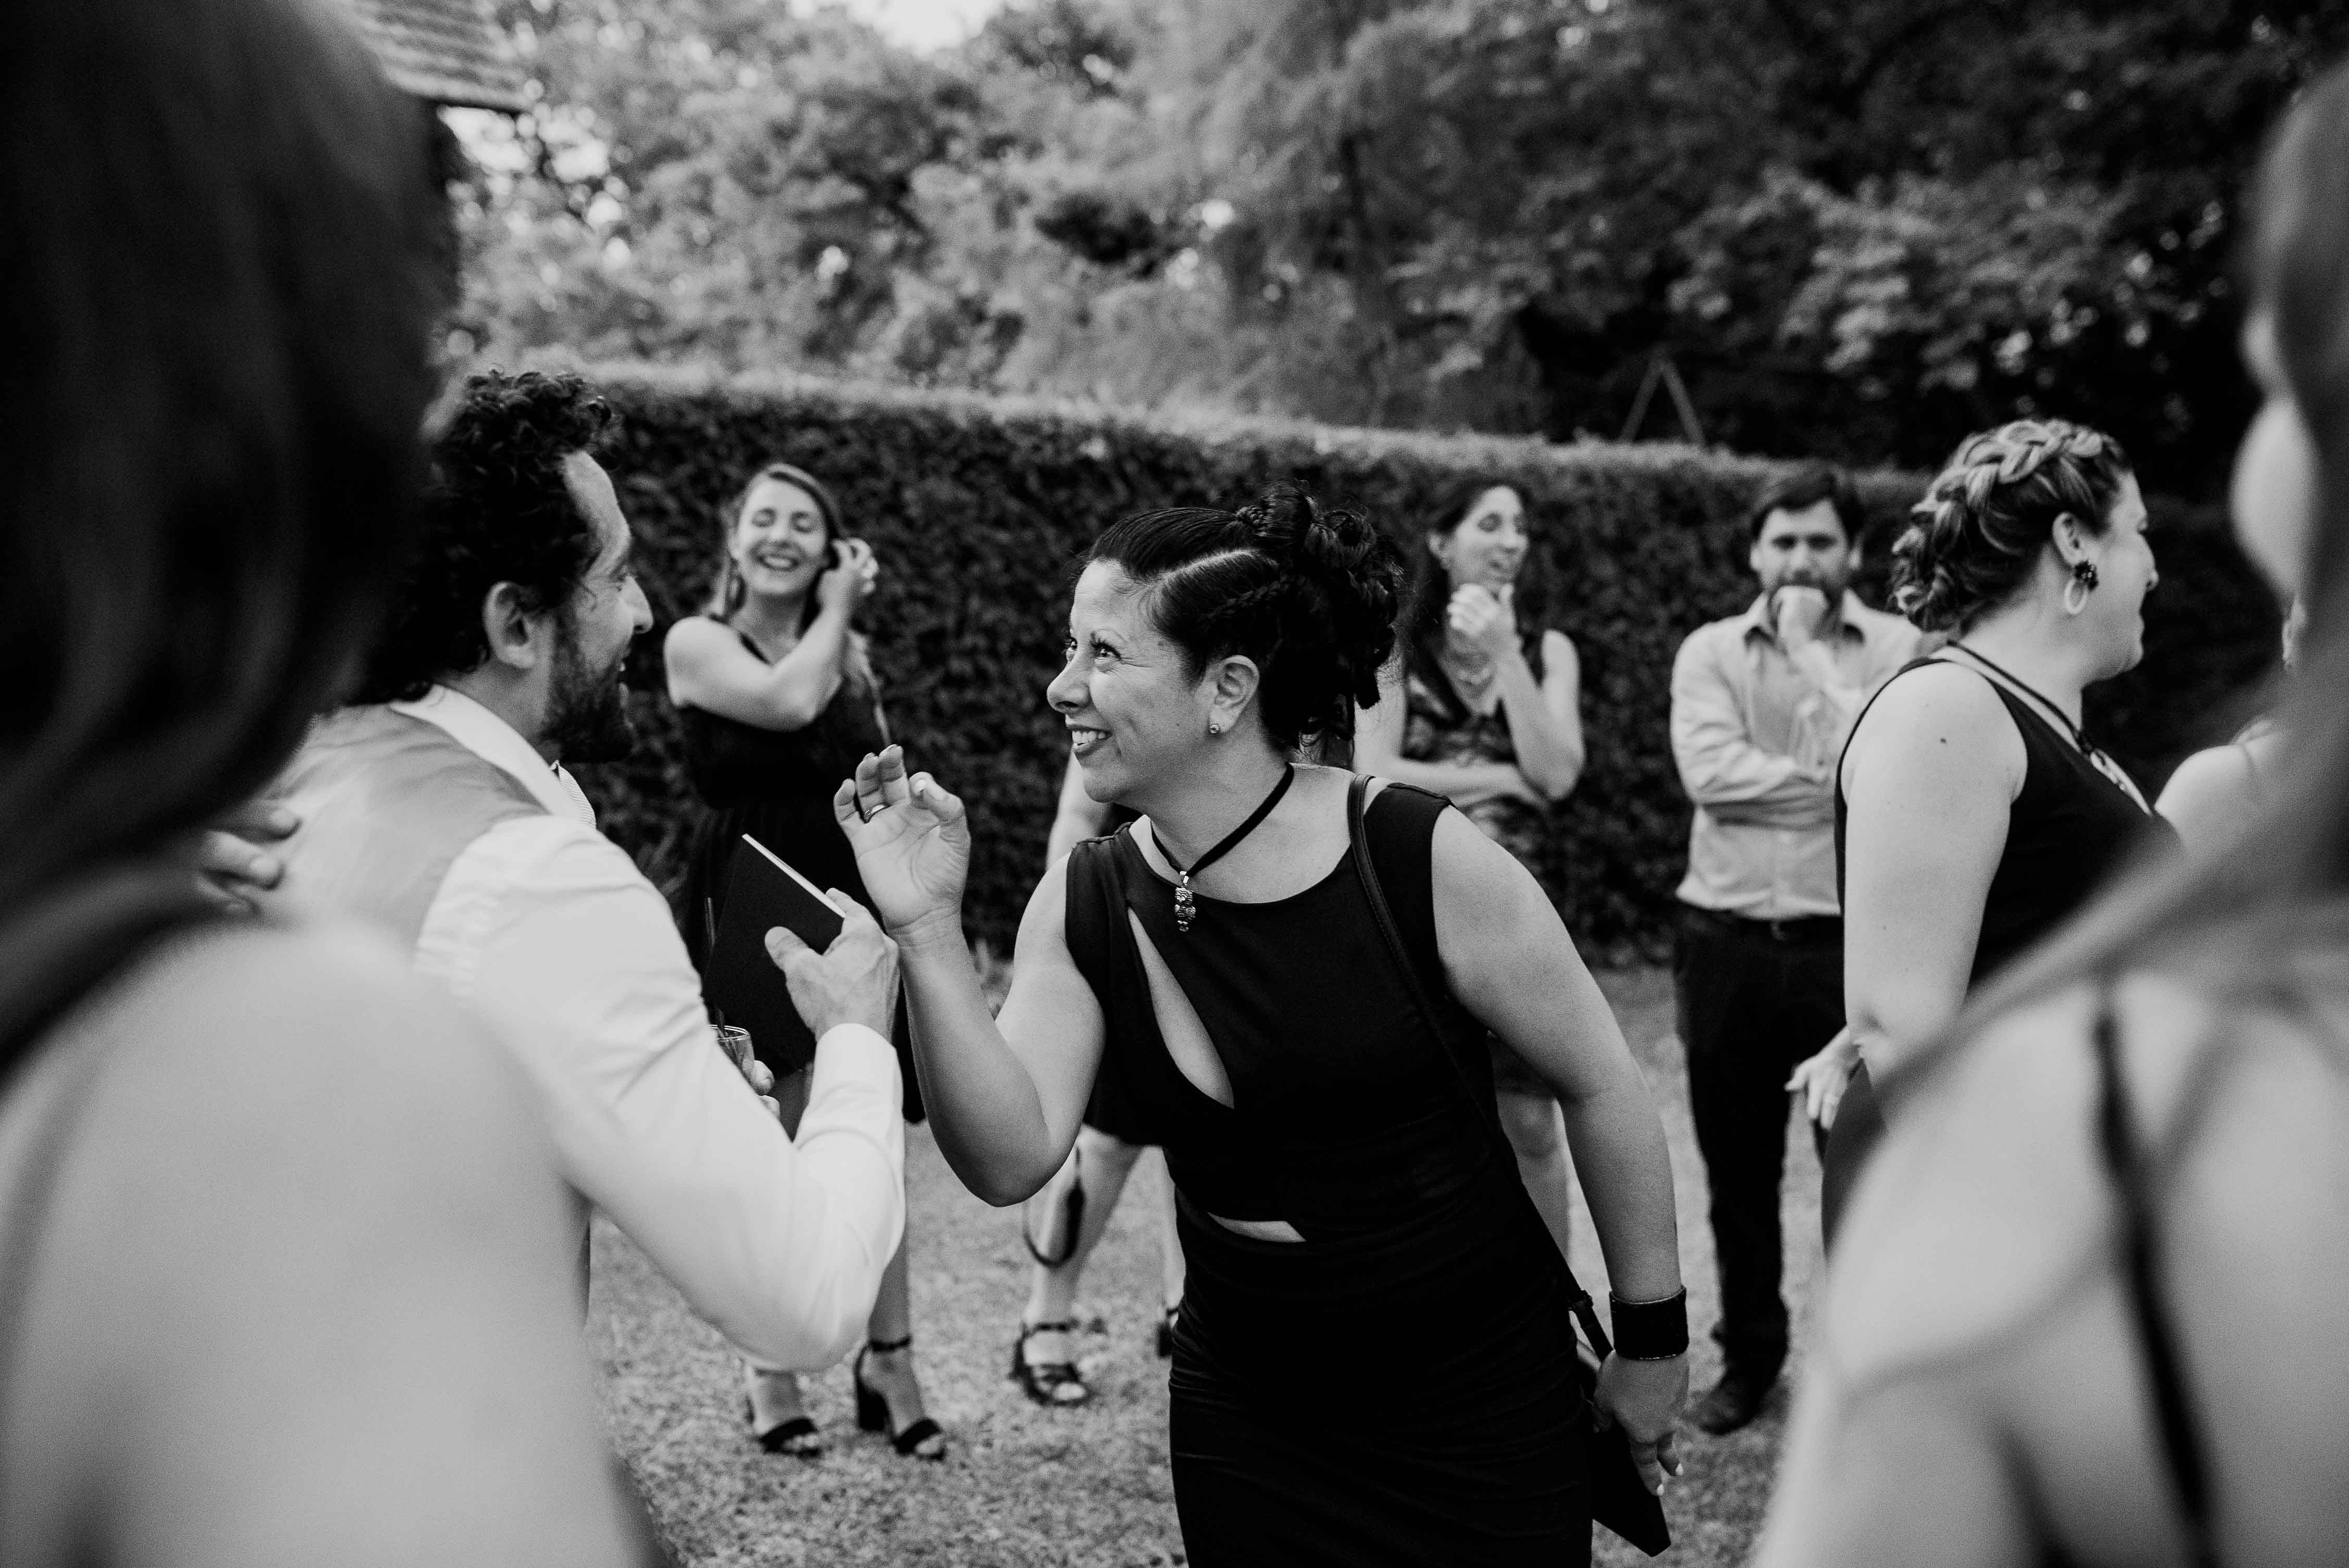 Fotos de la boda de Ana y Mauri en Rosario realizadas por Bucle Fotografias Flor Bosio y Caro Clerici